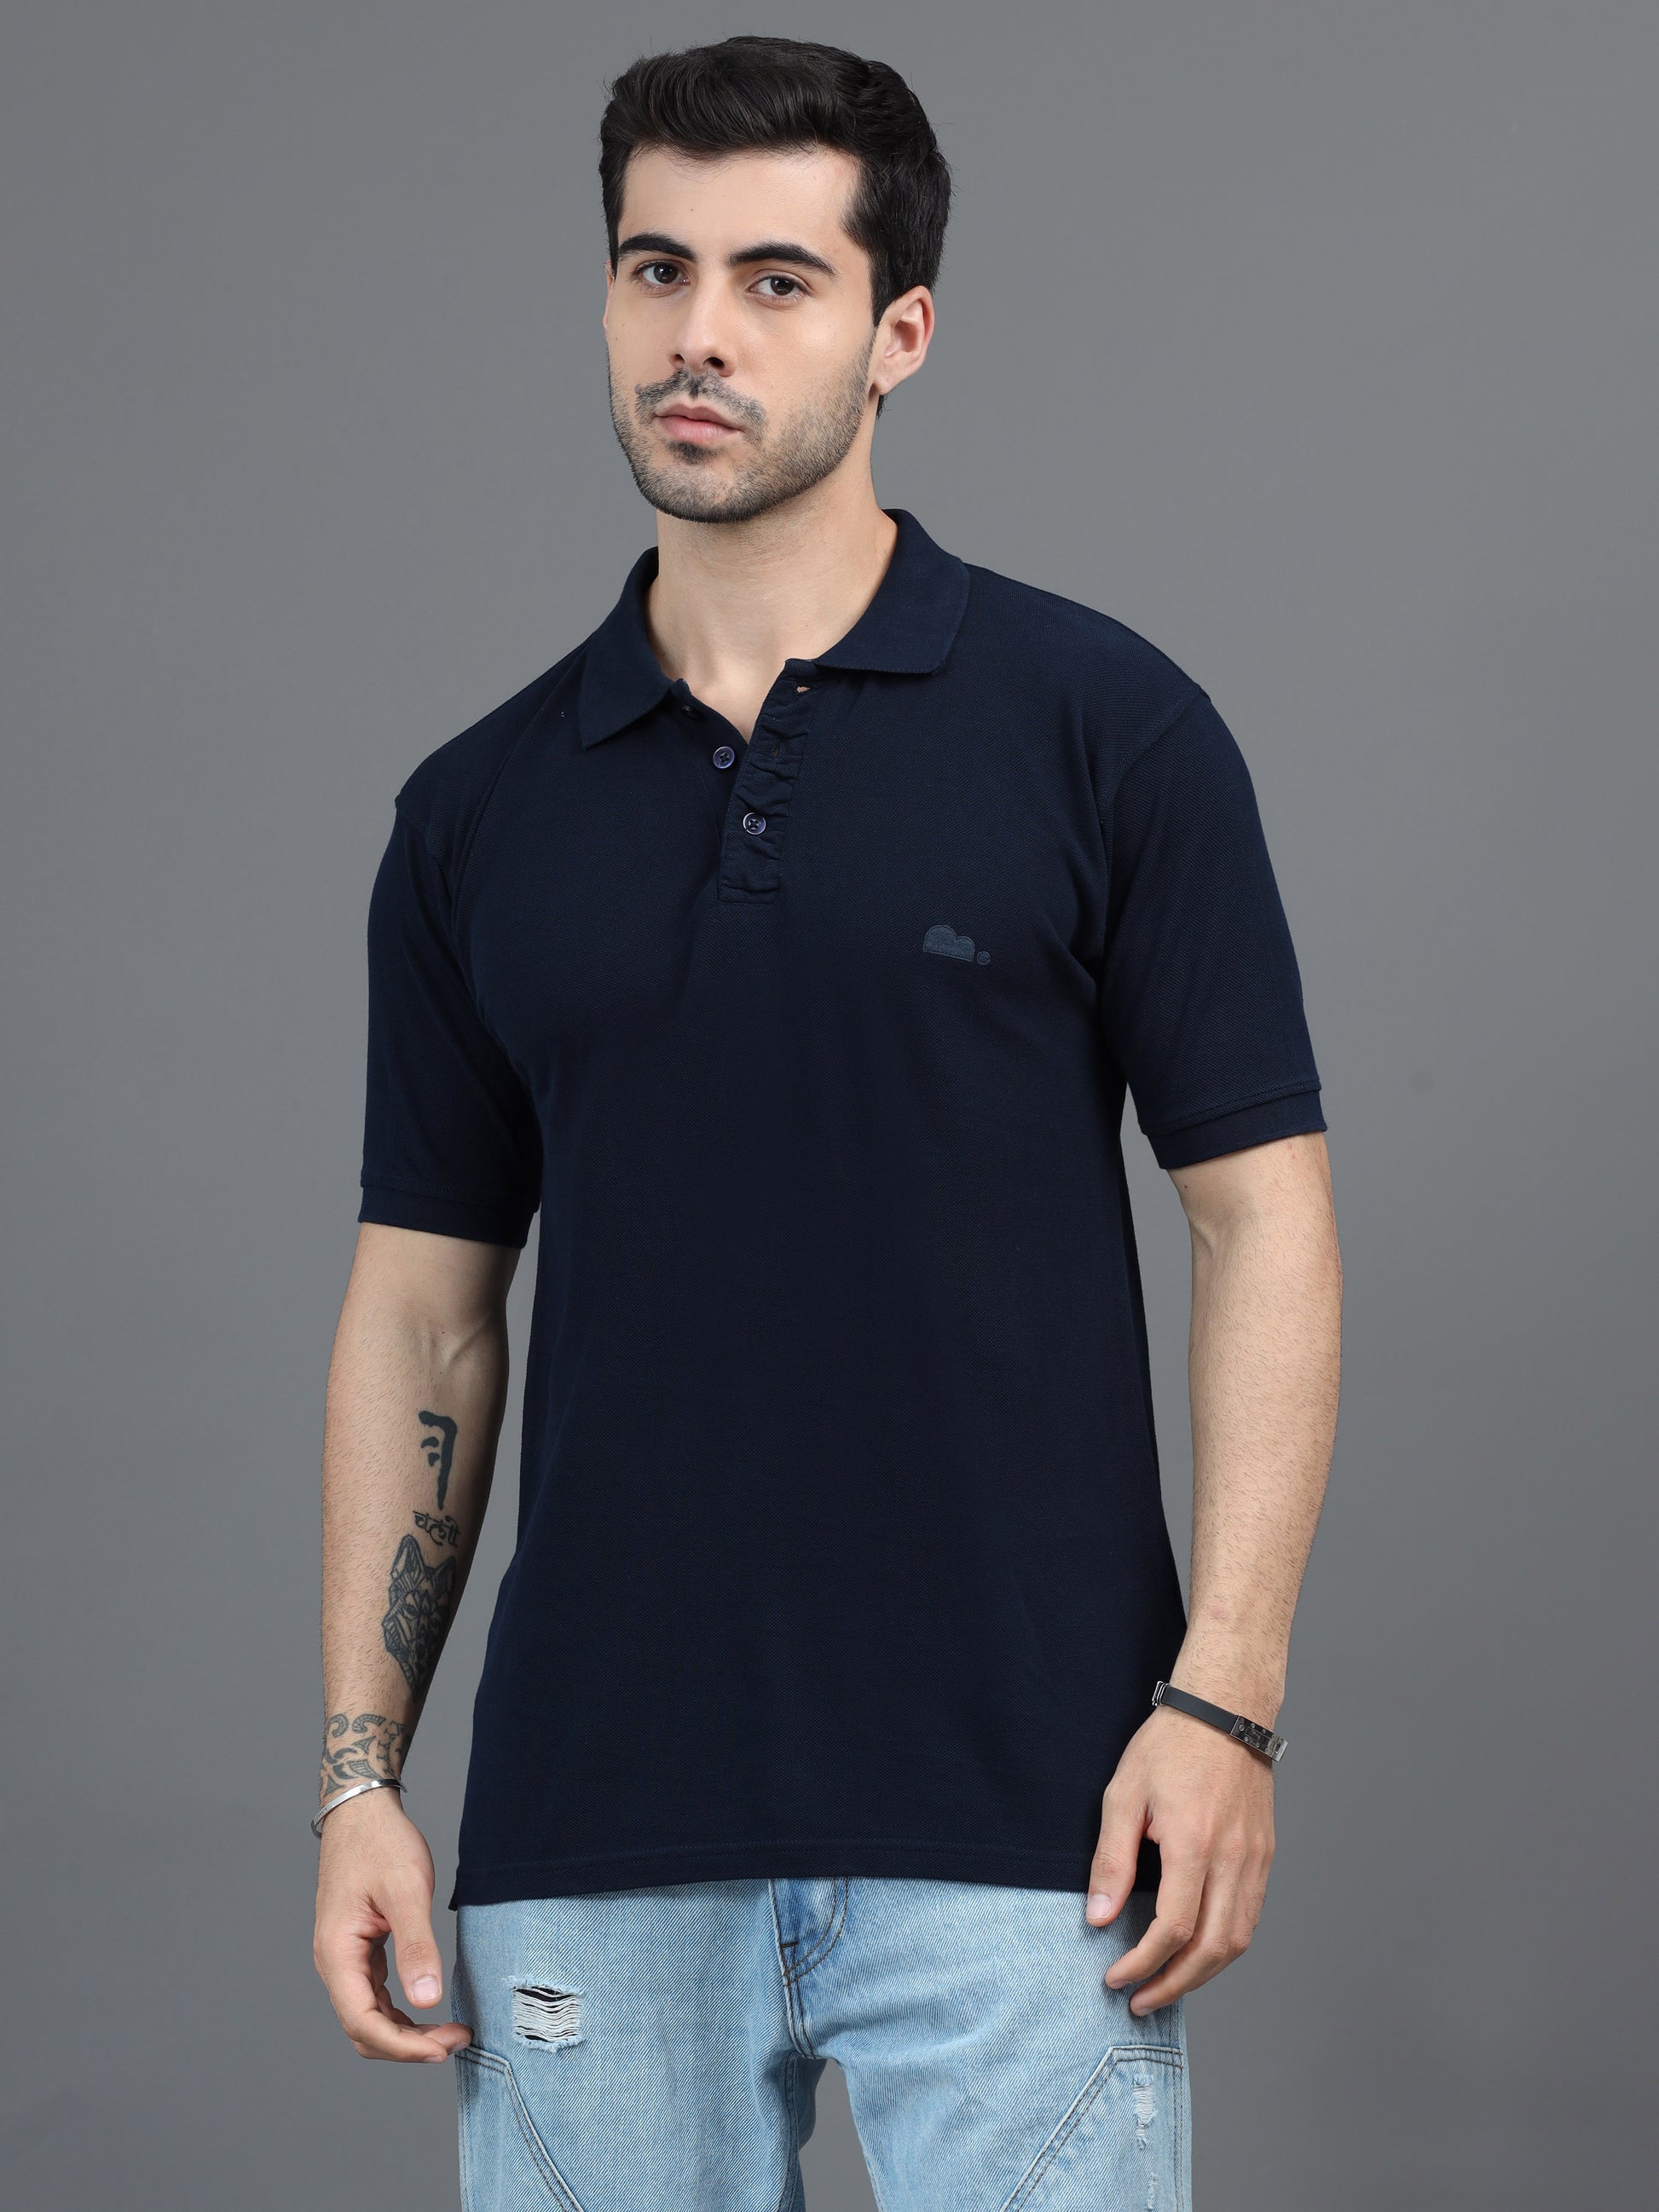 Navy Blue T Shirt for Men